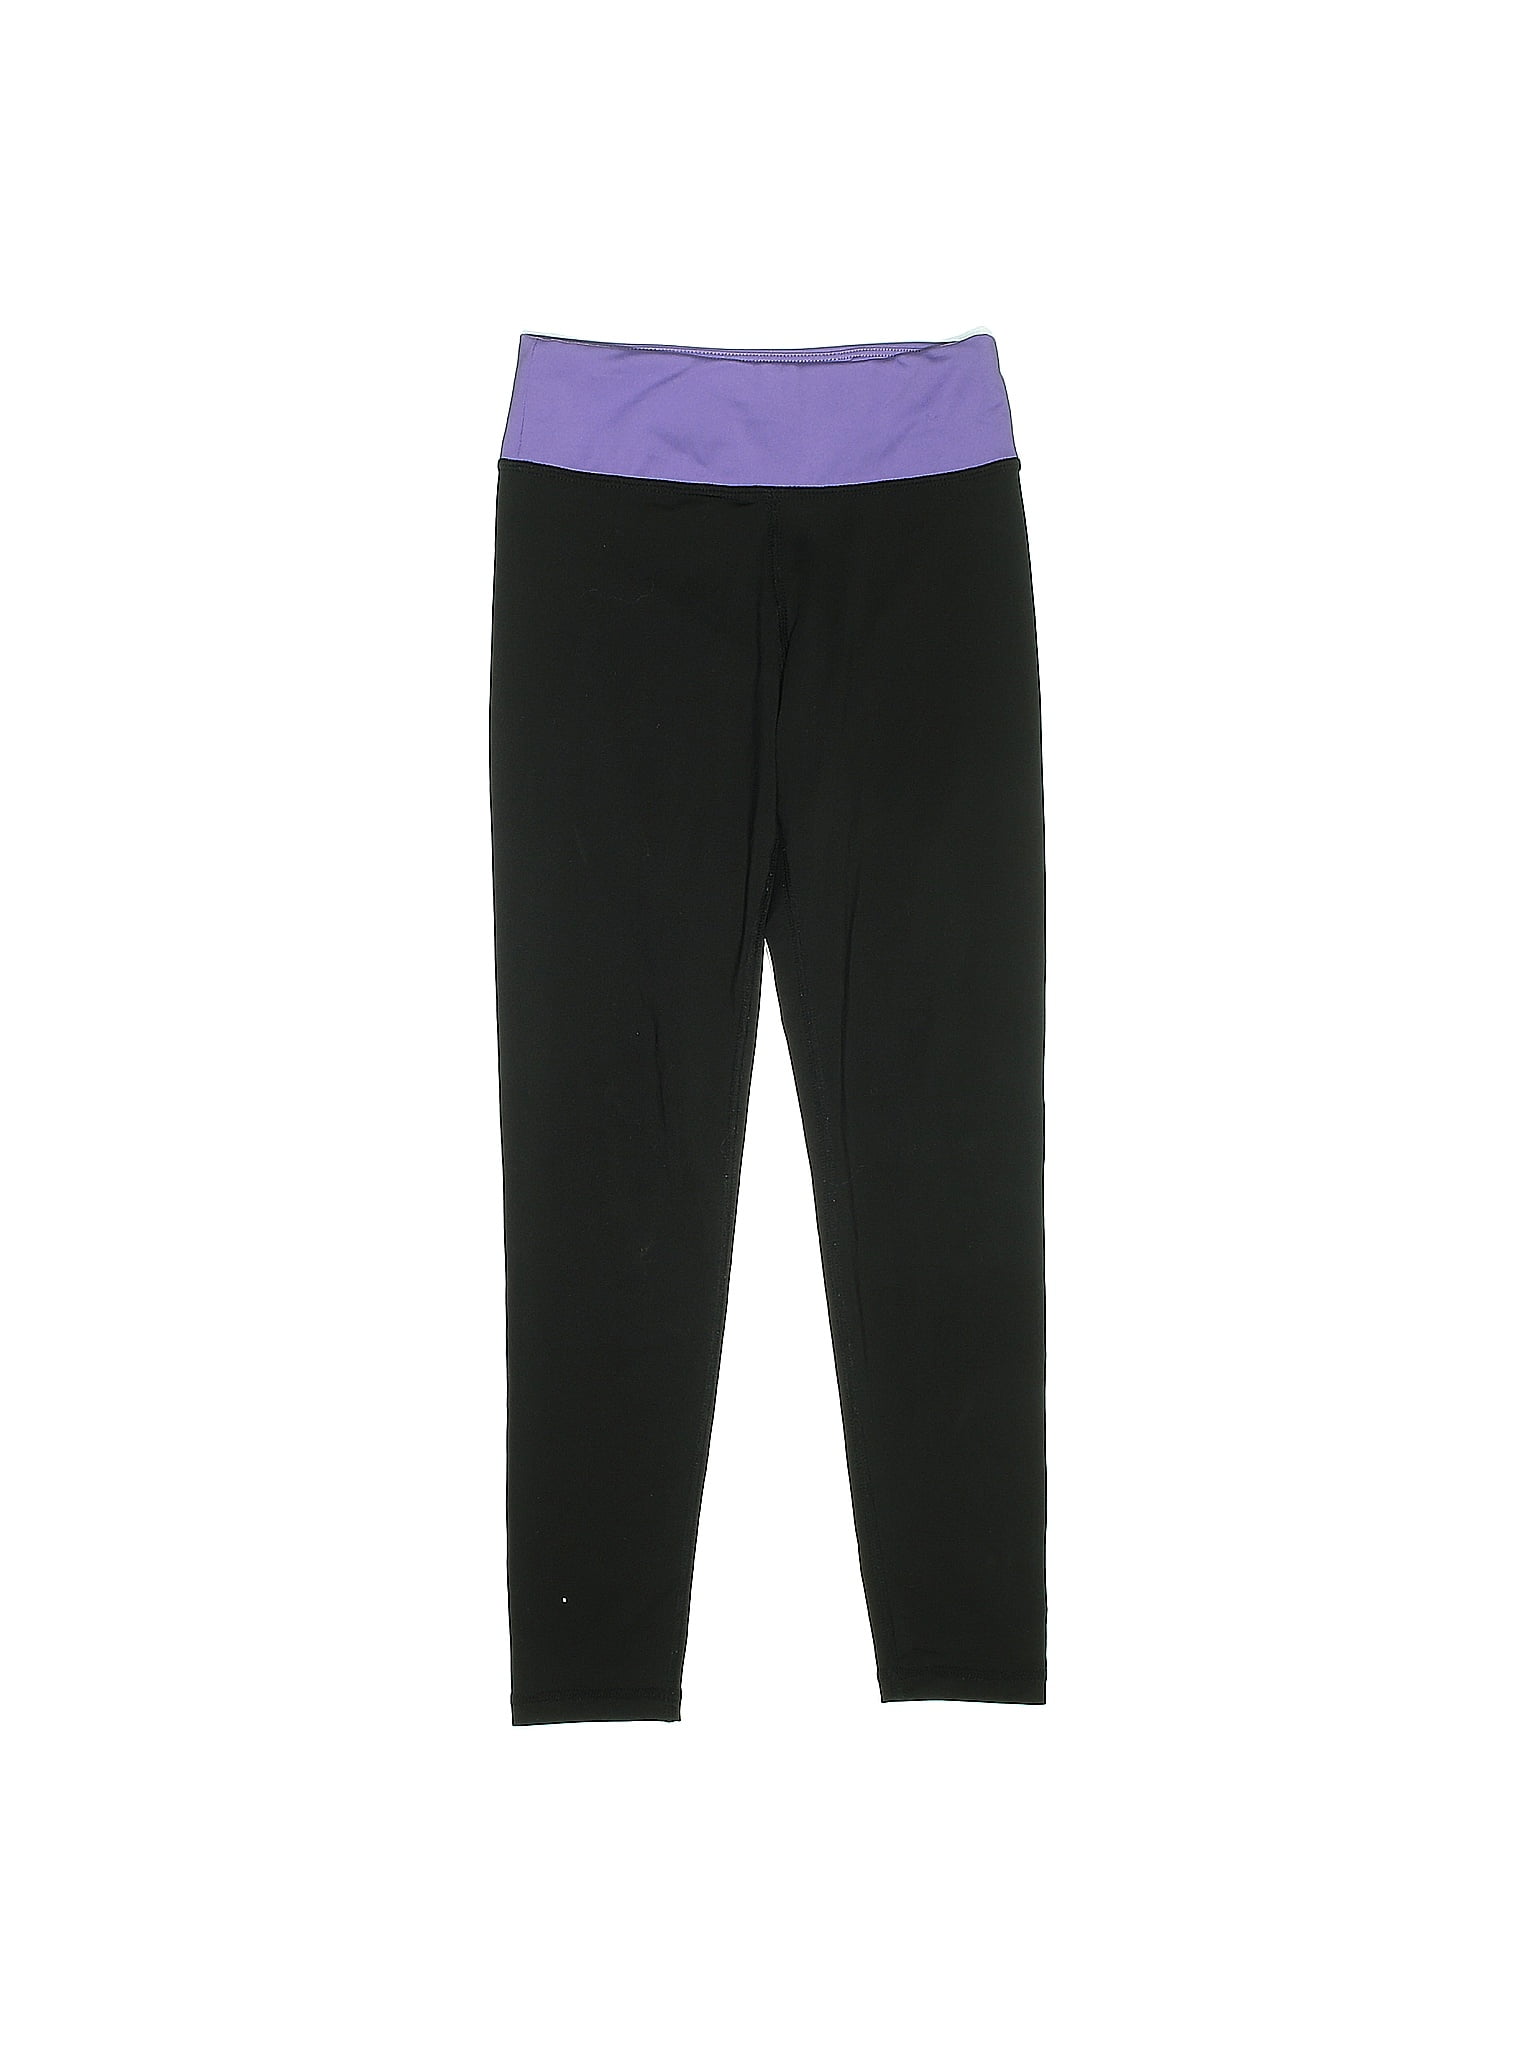 H&M Sport Black Purple Active Pants Size 6X - 7 - 40% off | thredUP